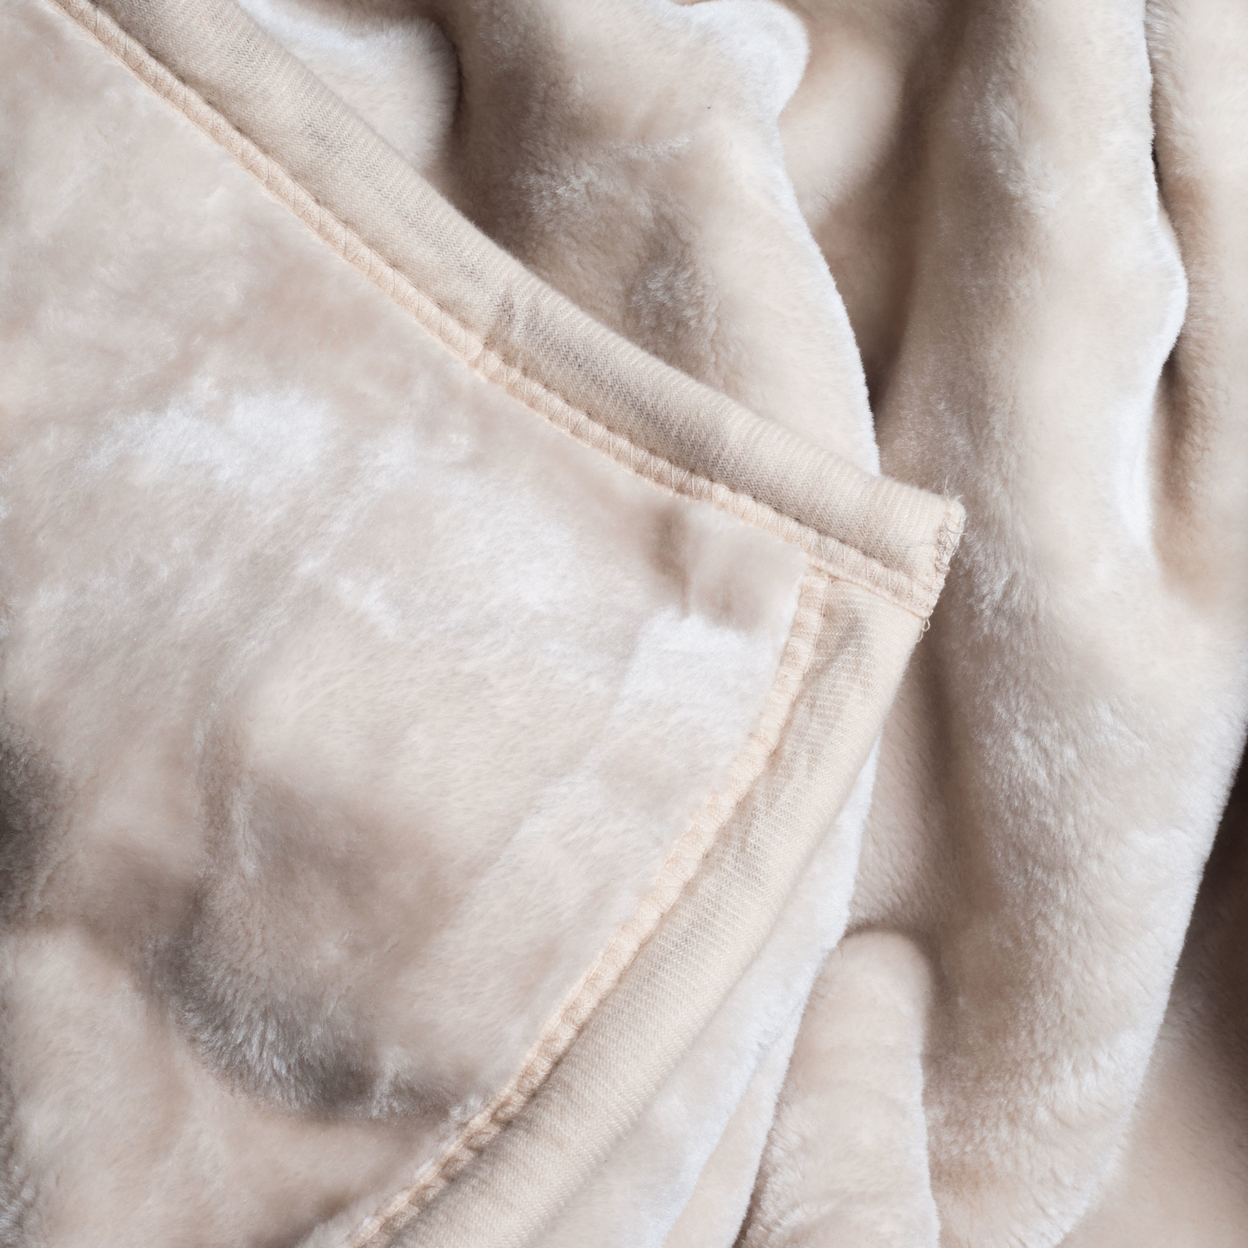 Super Fuzzy Soft Heavy Thick Plush Mink Blanket 8 Pound - Beige